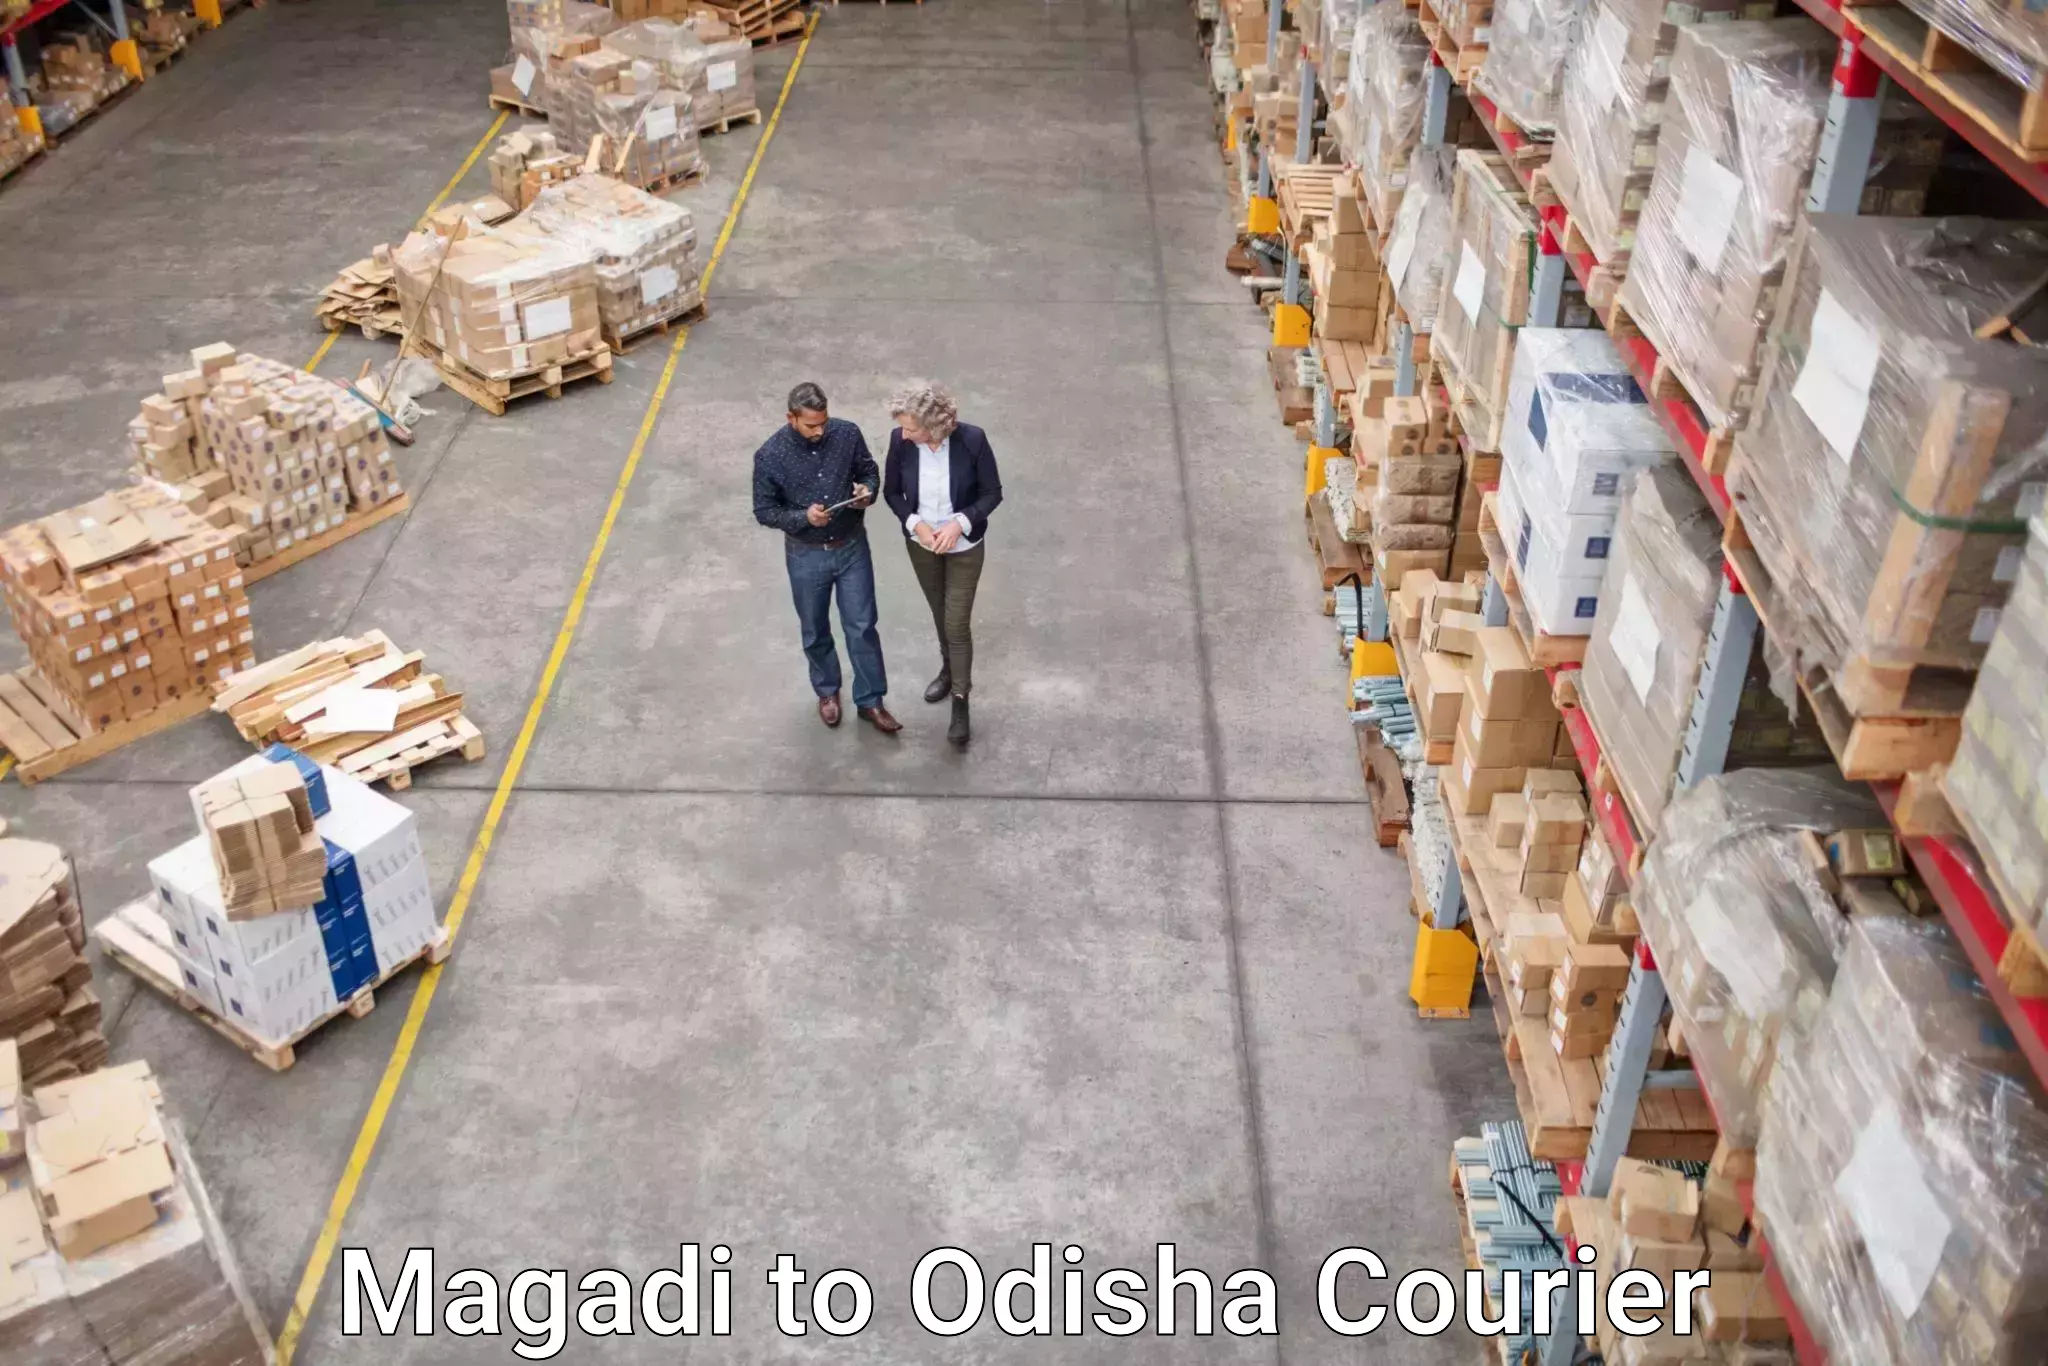 Speedy delivery service Magadi to Odisha